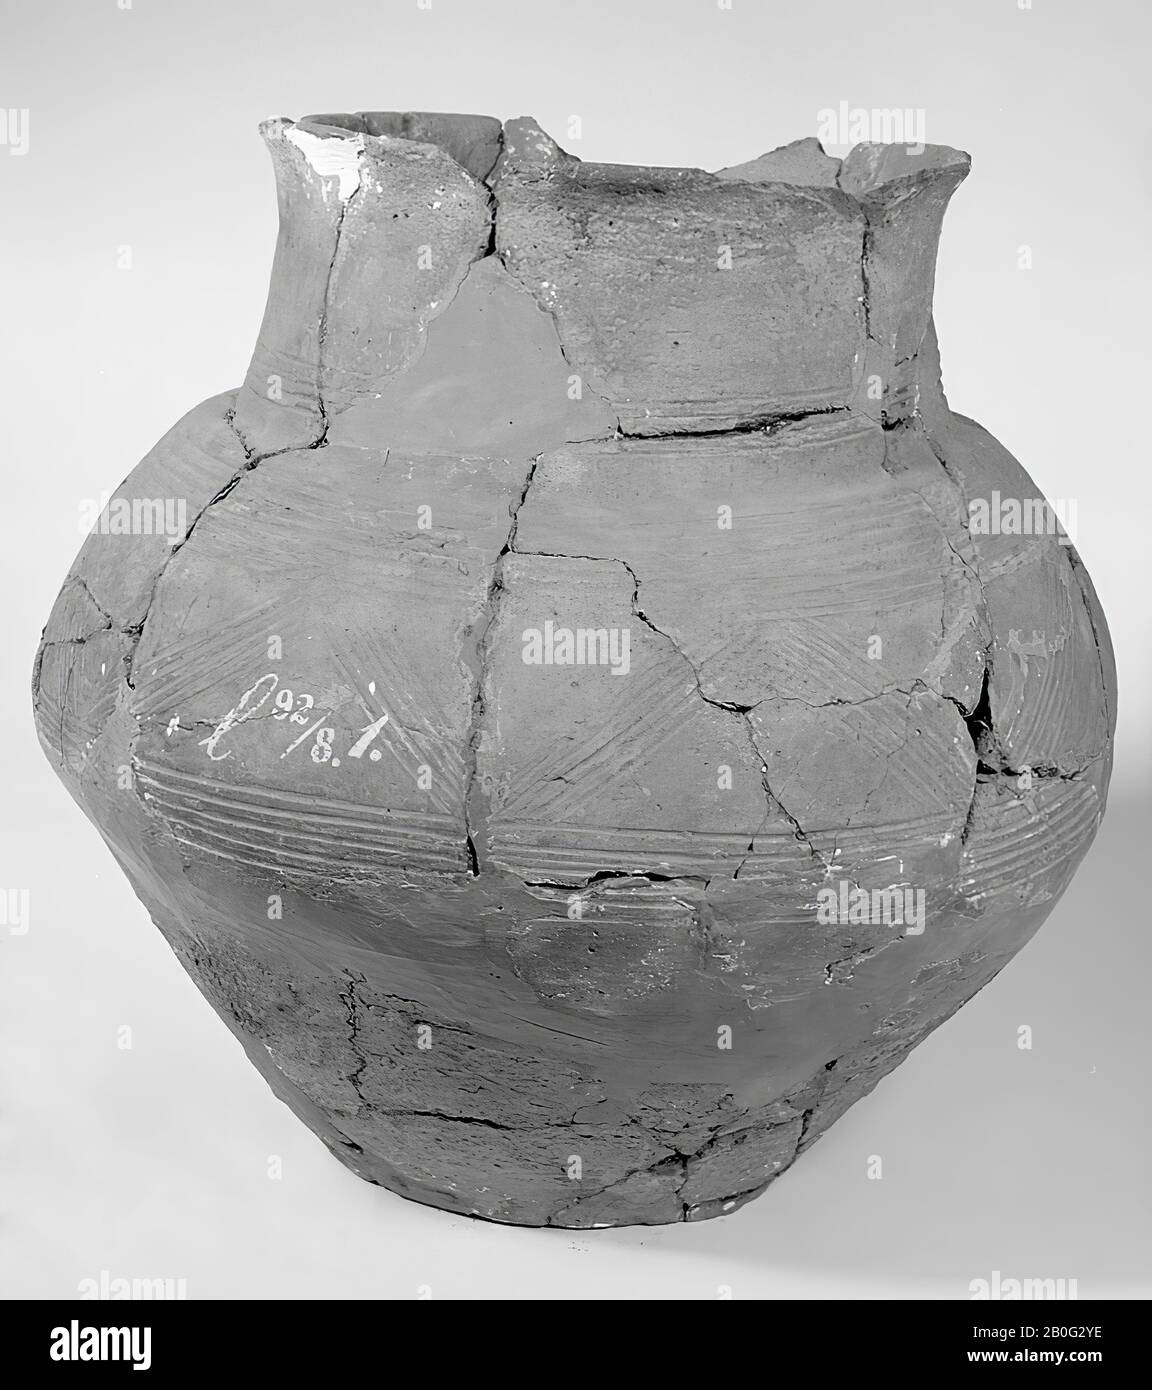 urne marron sphérique avec fond aplati et bord montant. Sur le ventre décoré de lignes parallèles séparées par des lignes en zigzag. Ici et là par le Finder avec des morceaux d'autres urnes, mais facilement reconnaissables, mis à jour, urne, poterie, hauteur: 37 cm, préhistoire -800 Banque D'Images